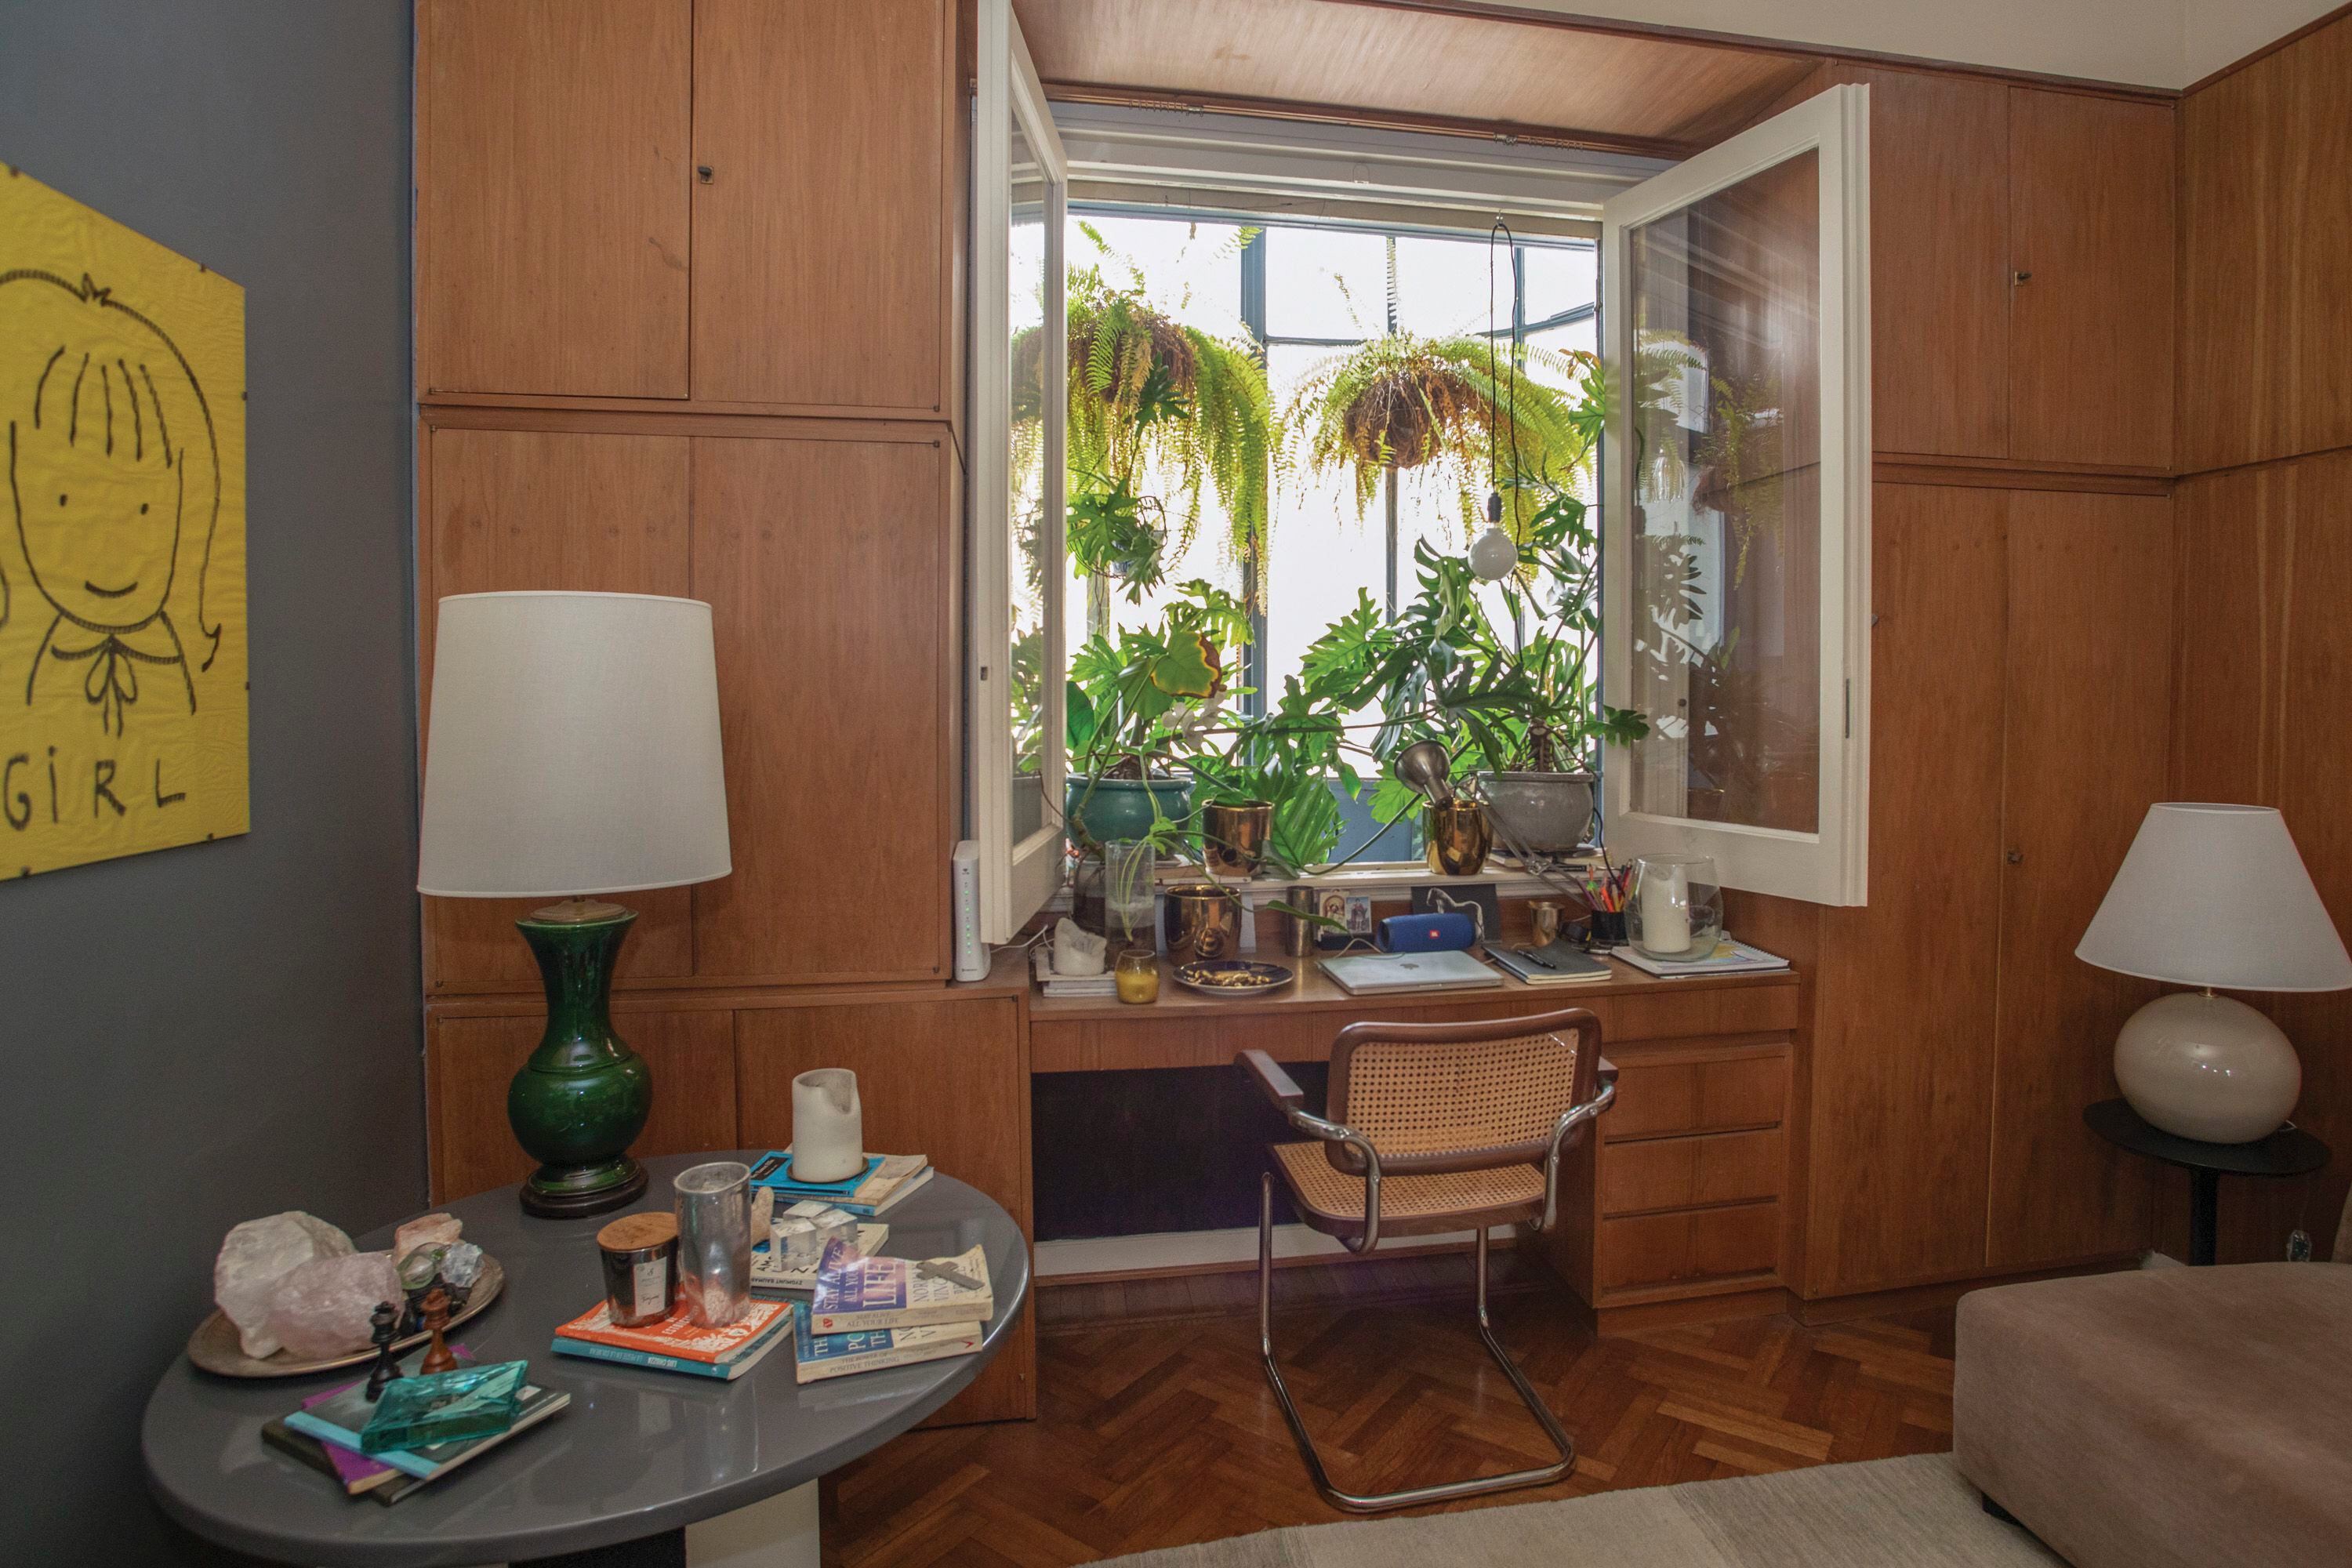 El mueble que reúne espacio de guardado y escritorio es original del departamento, al igual que el revestimiento en paneles de madera. Sillón y mesa redonda de anticuario. La ventana da al pequeño balcón trasero.